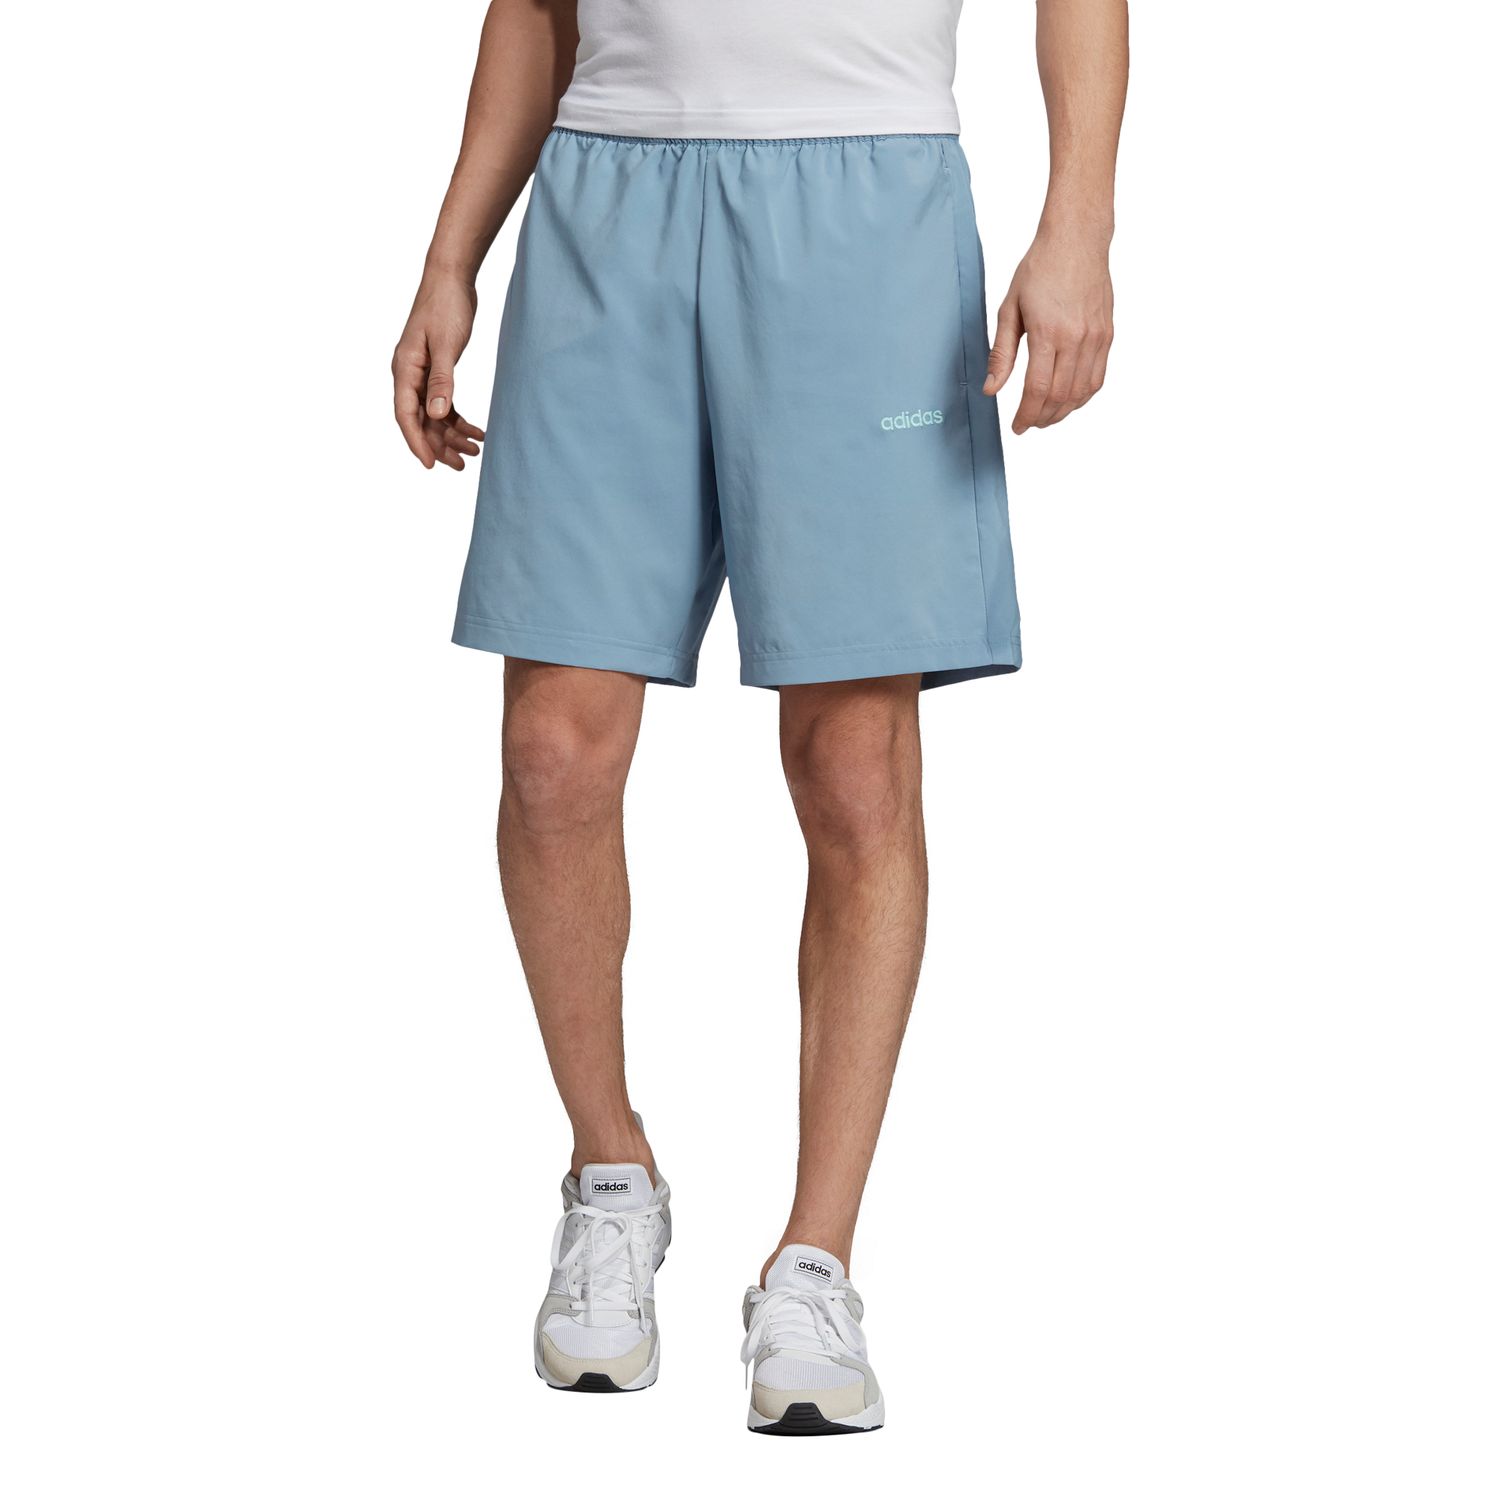 parley shorts